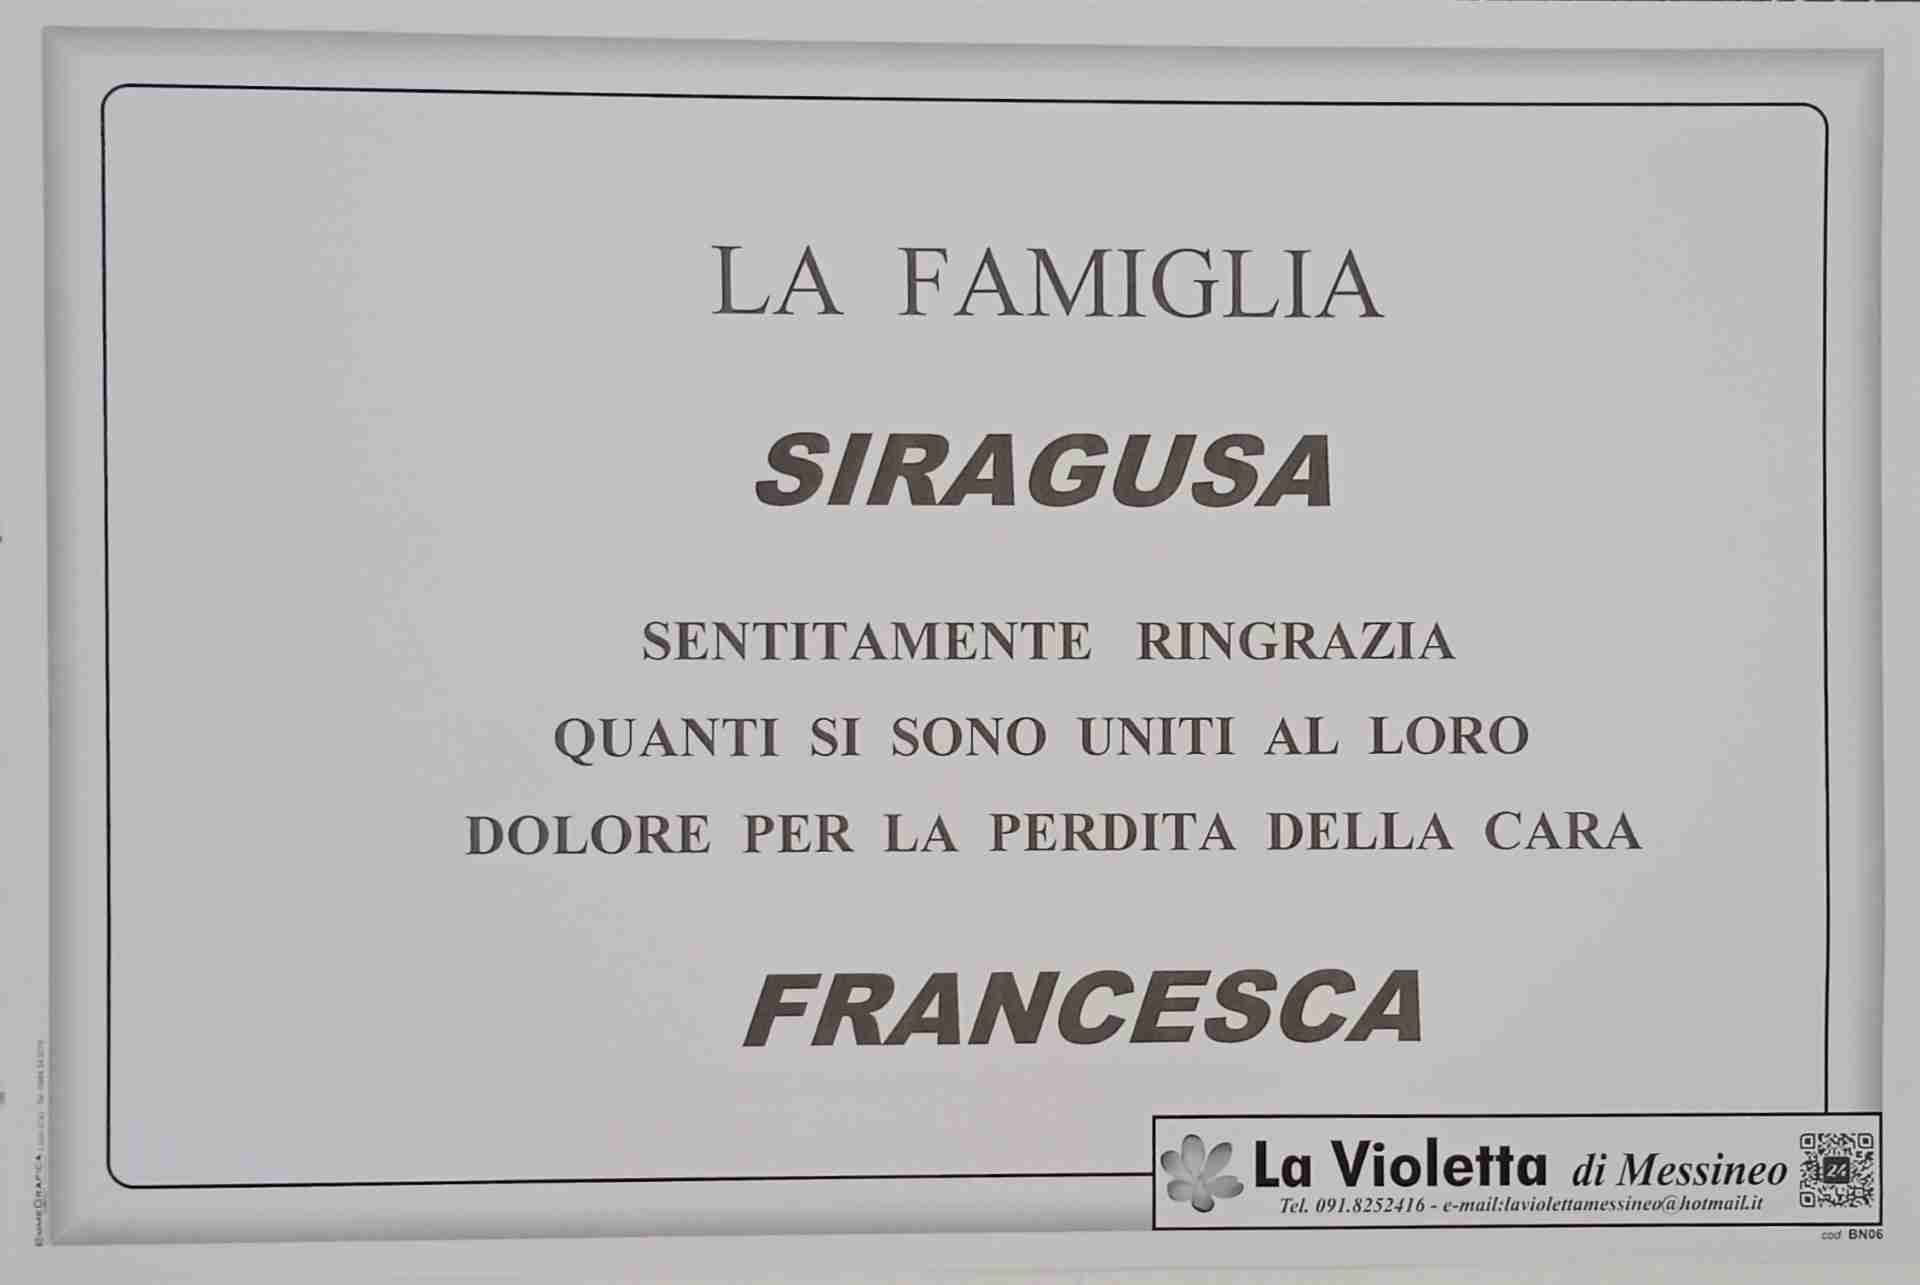 Francesca Vicari